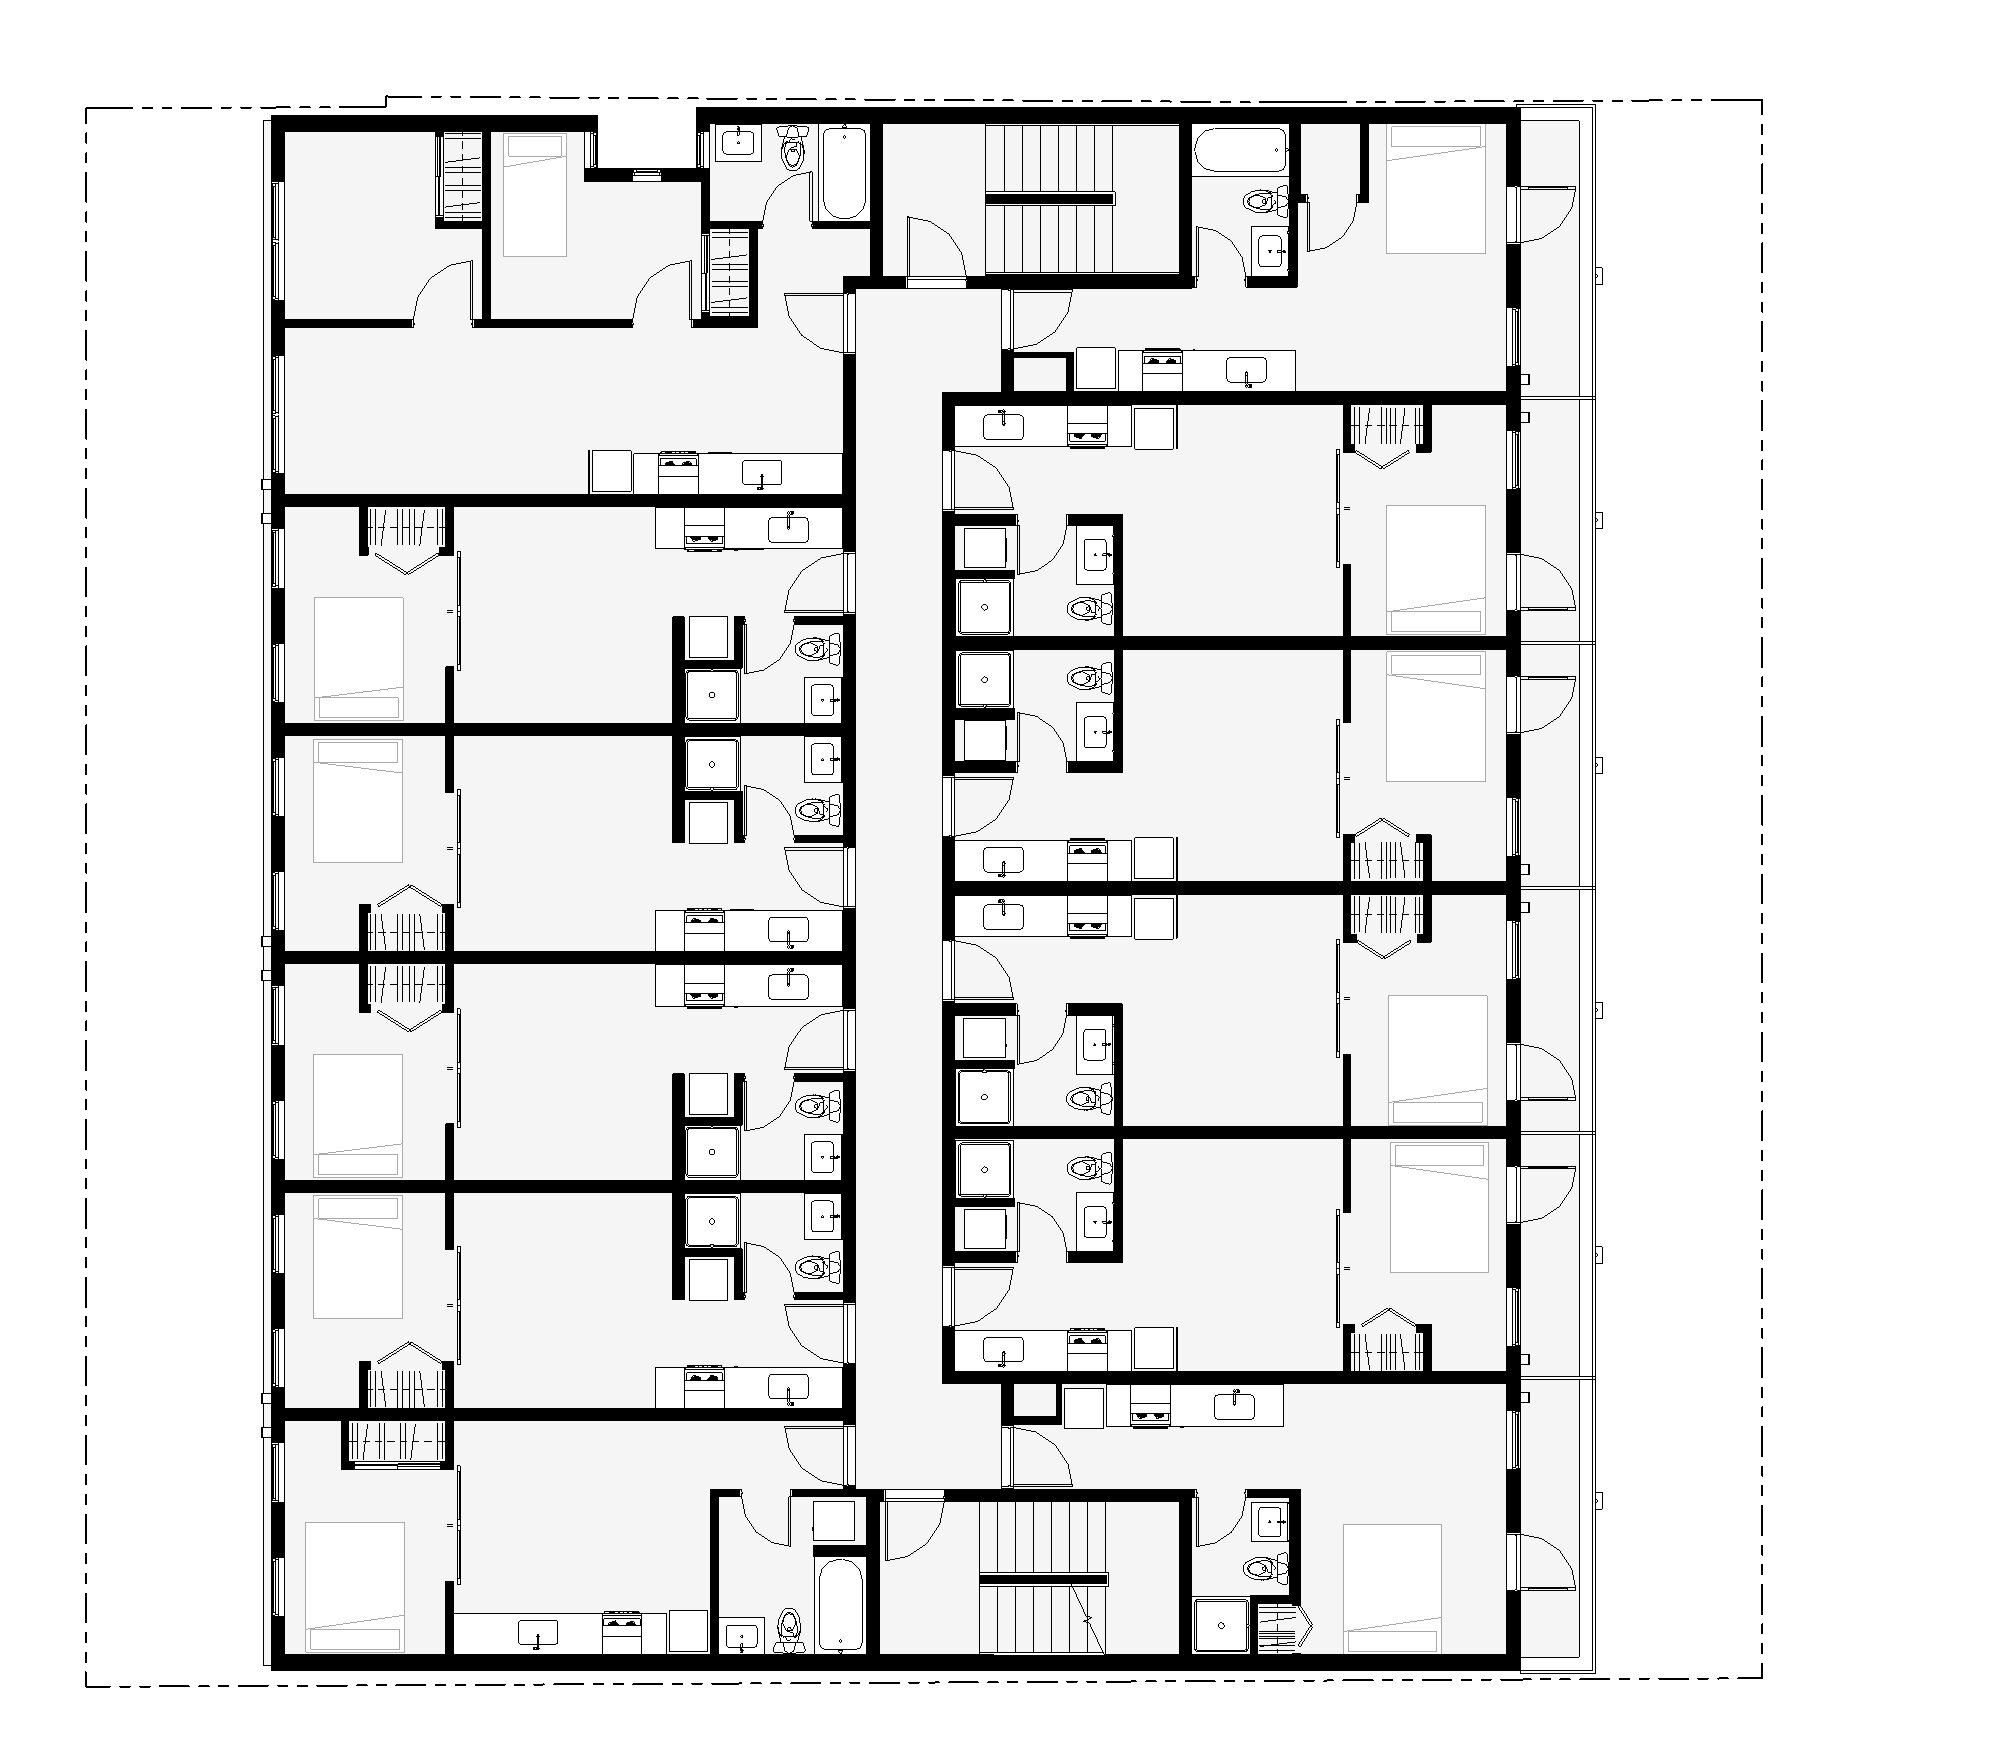 Paar 8541_CA6-2018 (post permit revision) - Floor Plan - LEVEL 4 (MARKETING).jpg